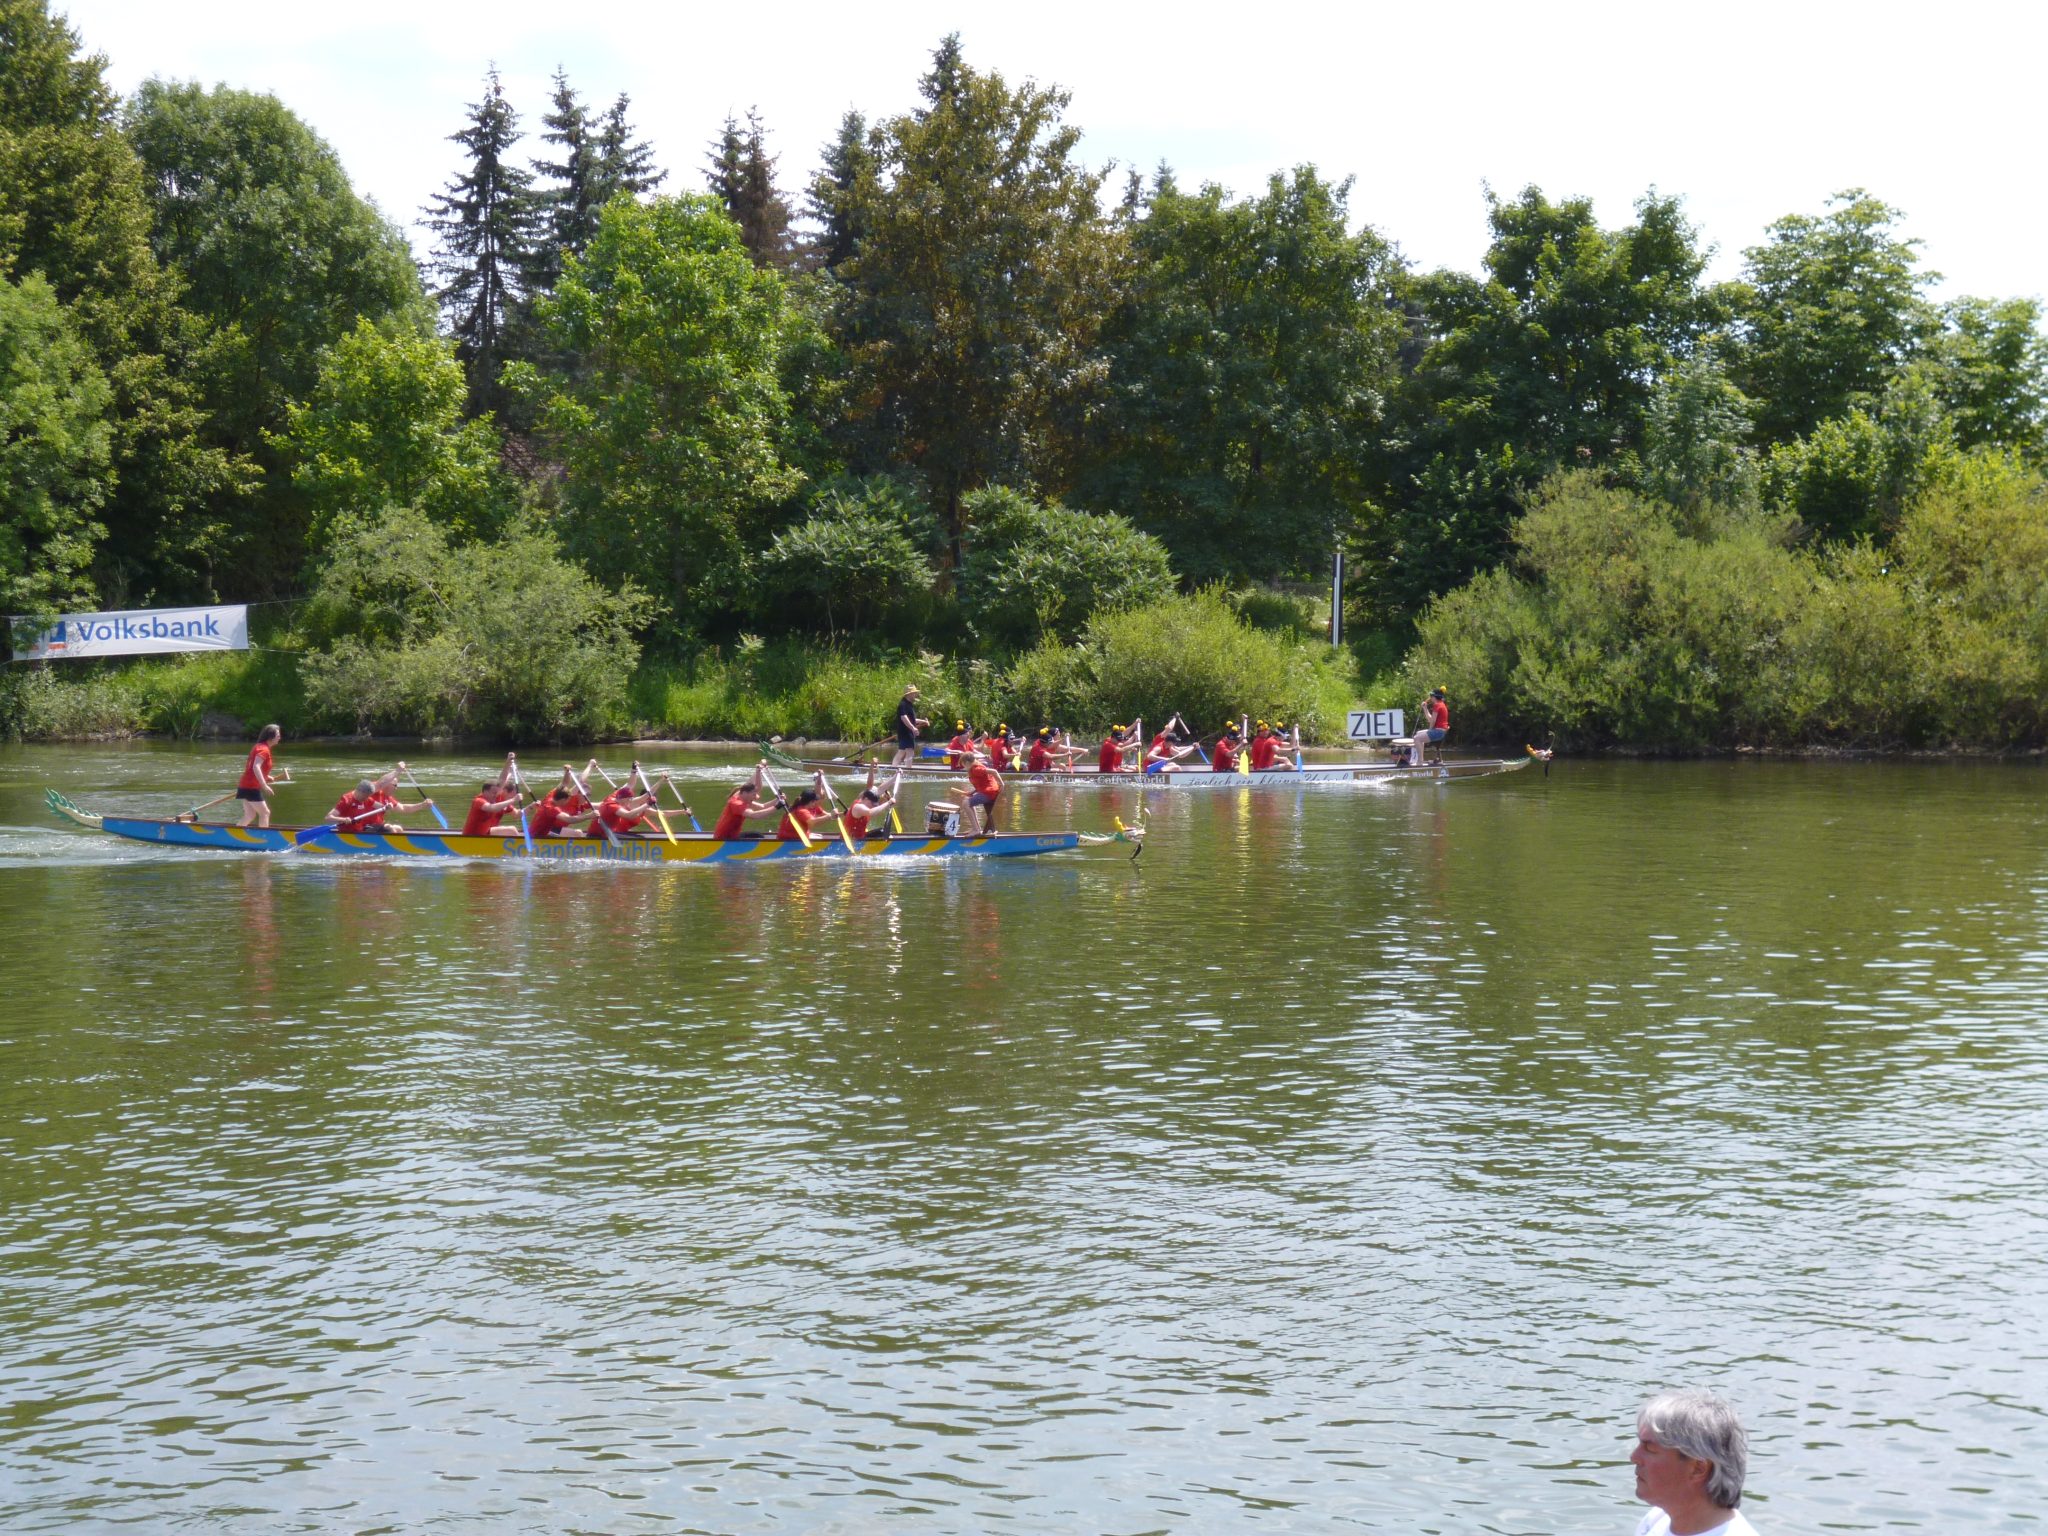 Zieleinlauf beim Drachenbootrennen in Lauingen - Veranstaltungen Bayern